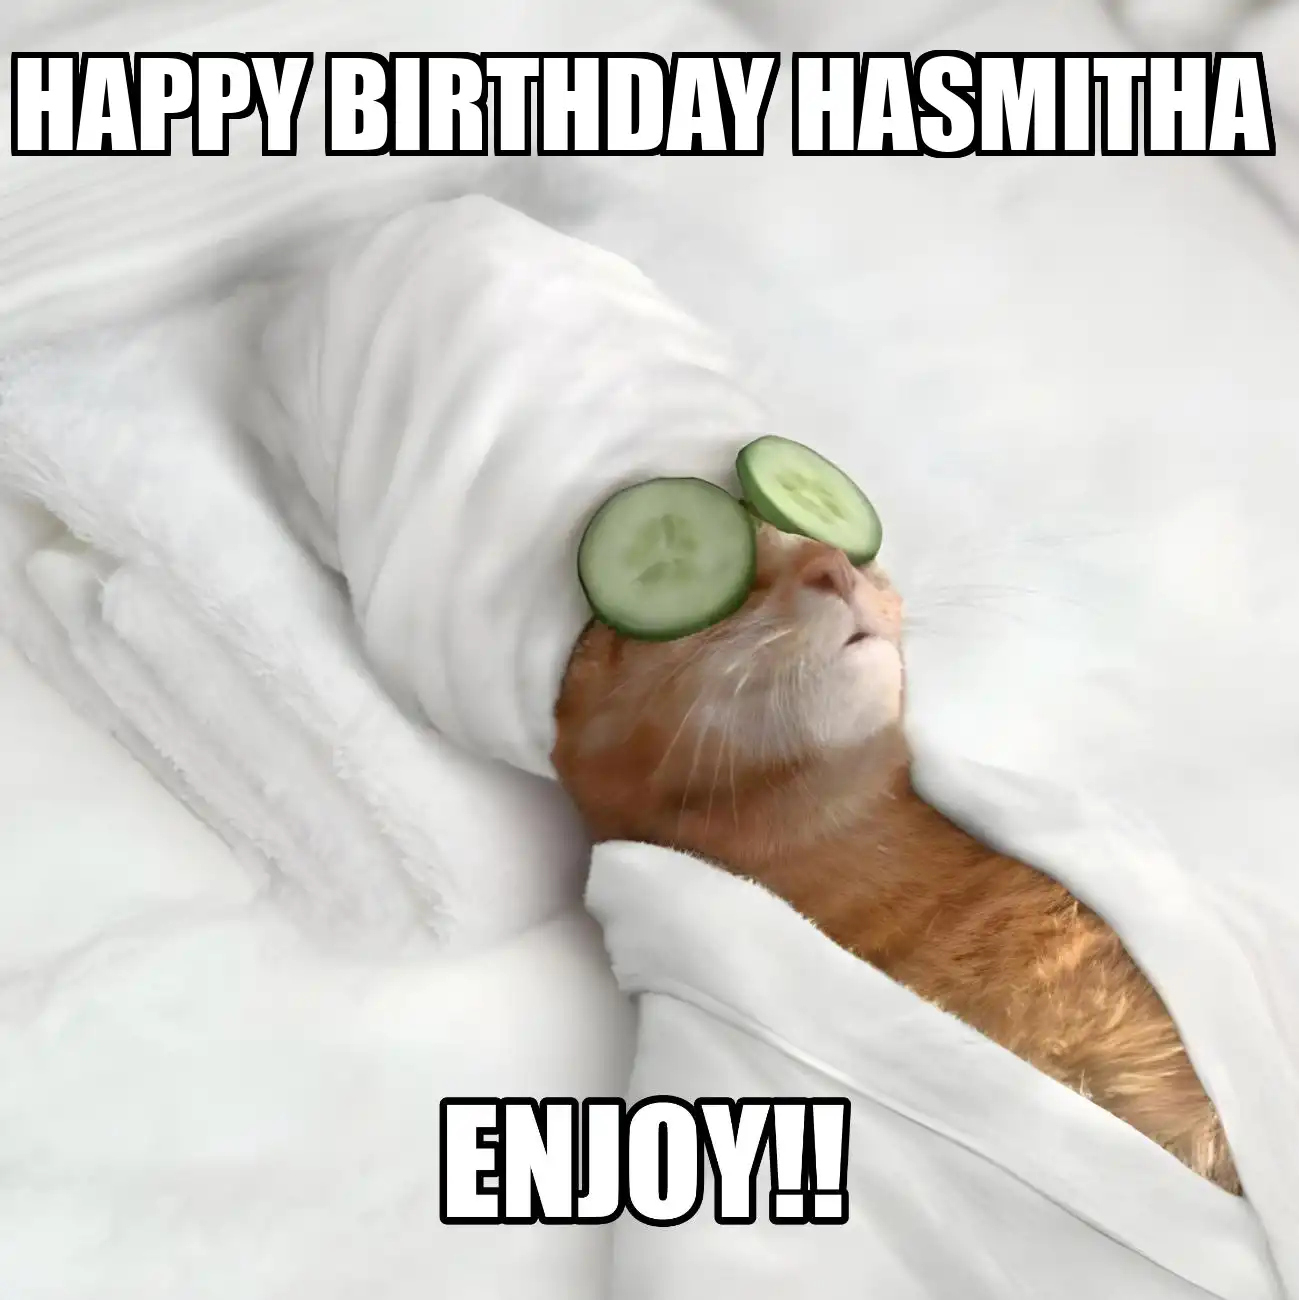 Happy Birthday Hasmitha Enjoy Cat Meme